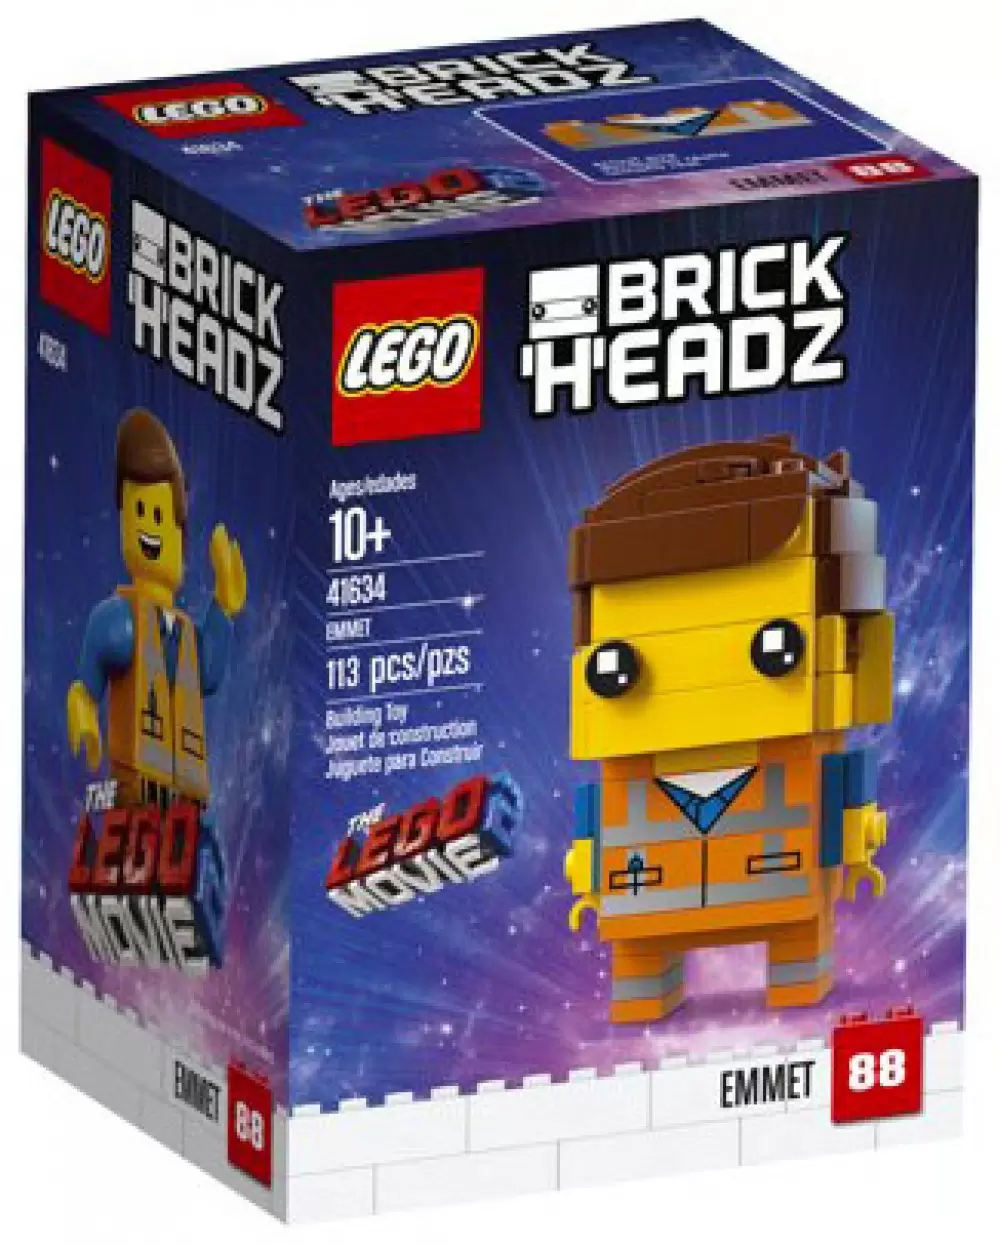 88 - Emmet - LEGO BrickHeadz set 41634